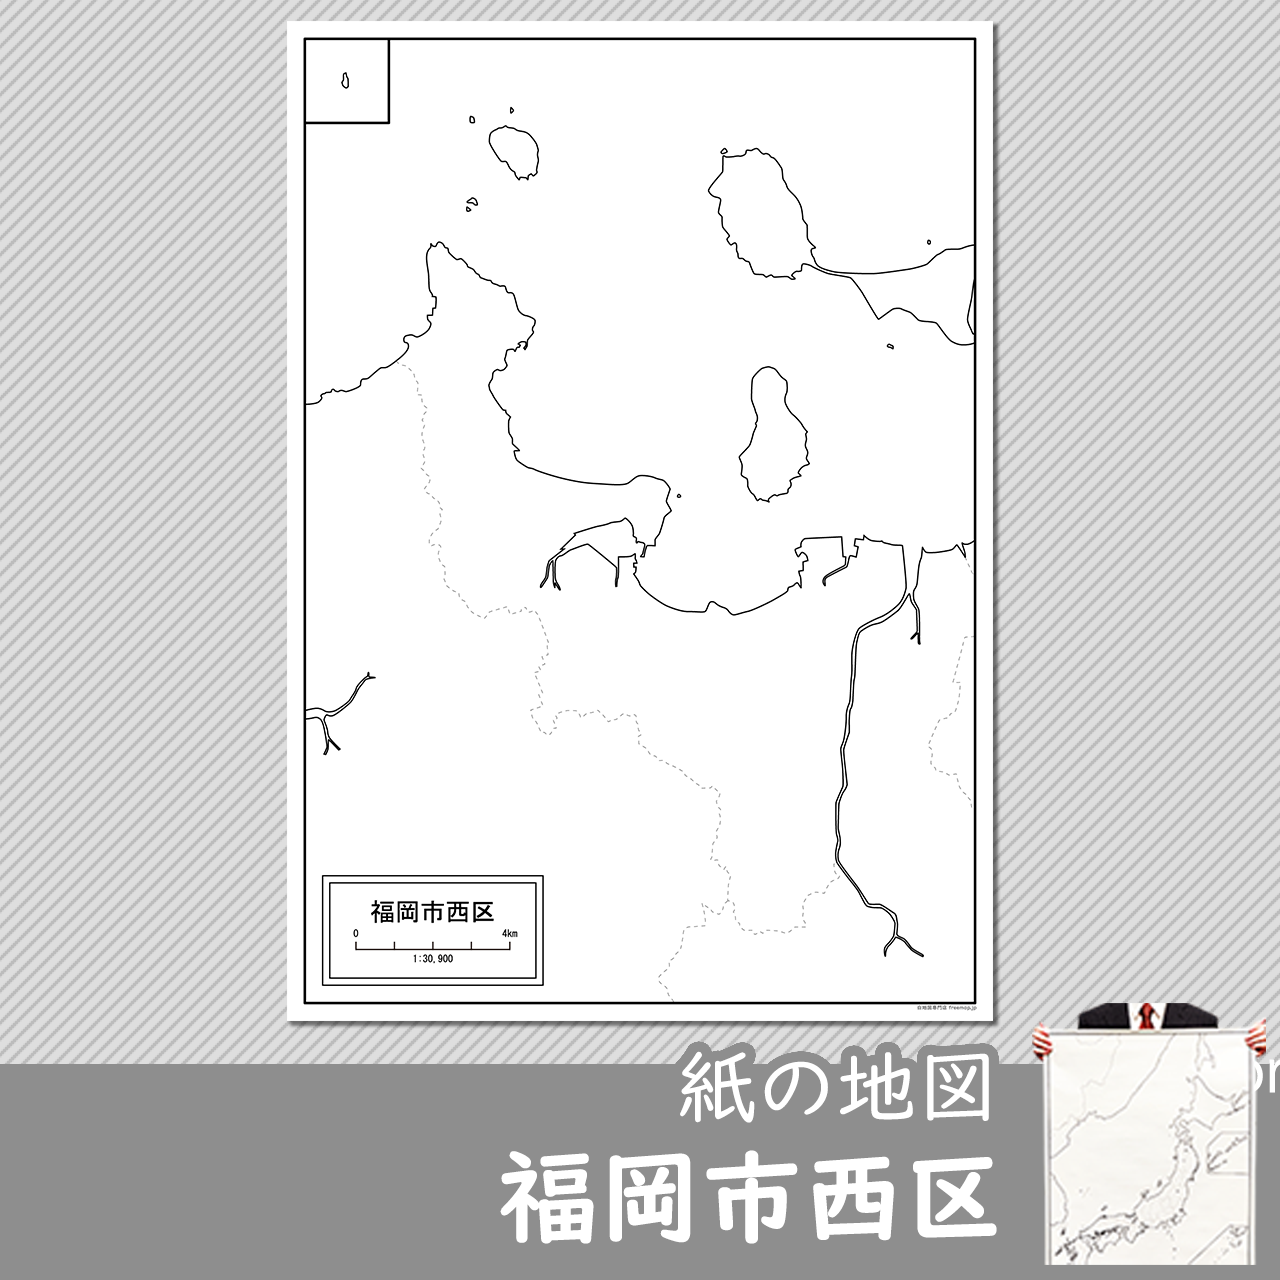 福岡市西区の紙の白地図のサムネイル